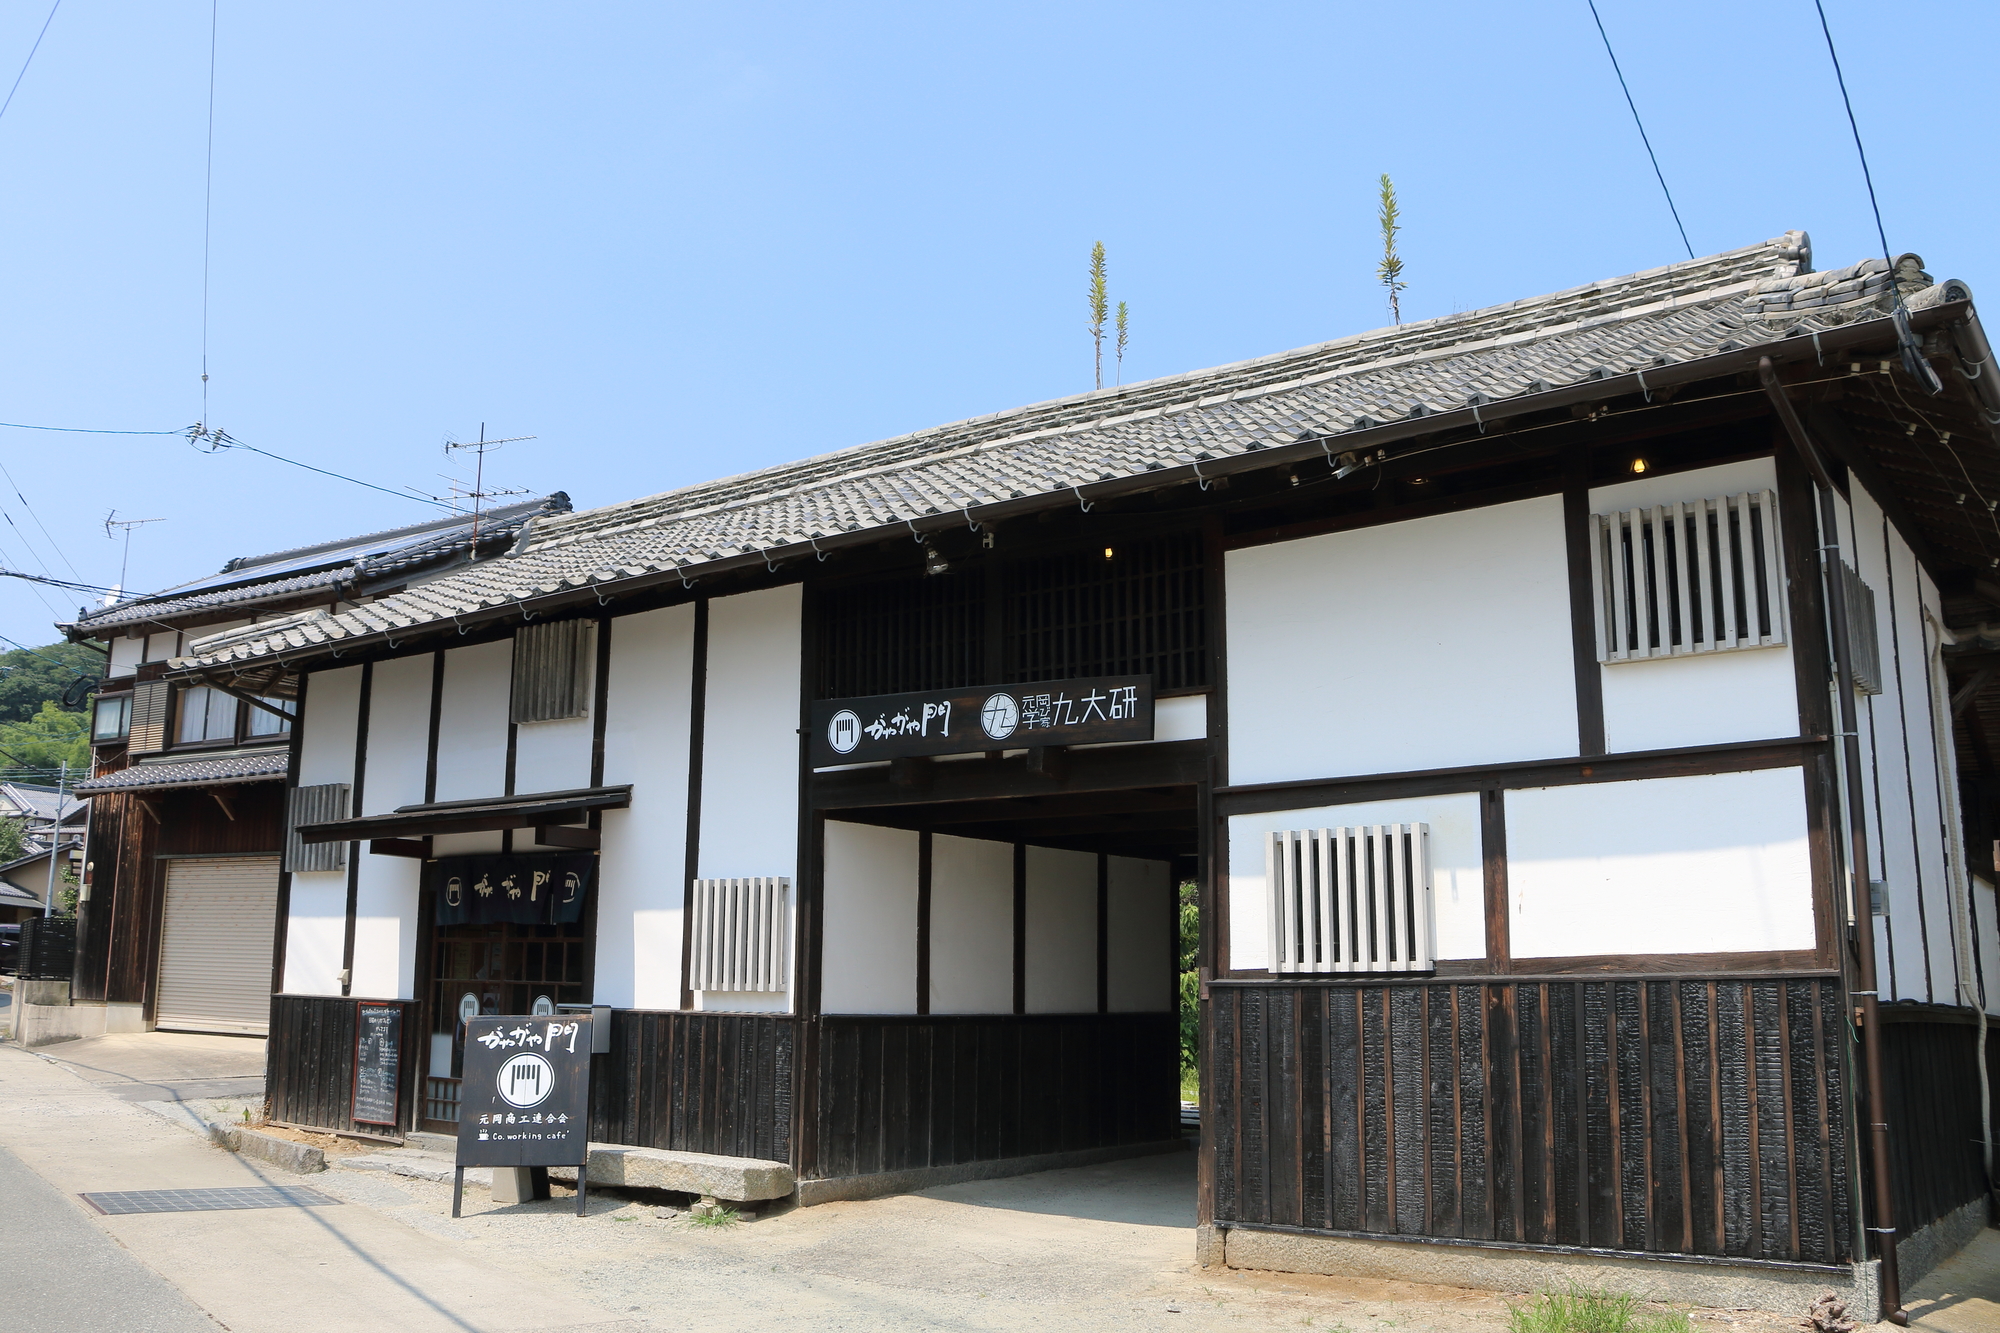 高崎で古民家再生プロジェクト案 の段階 高崎市の不動産会社room ｓ ルームス スタッフブログ